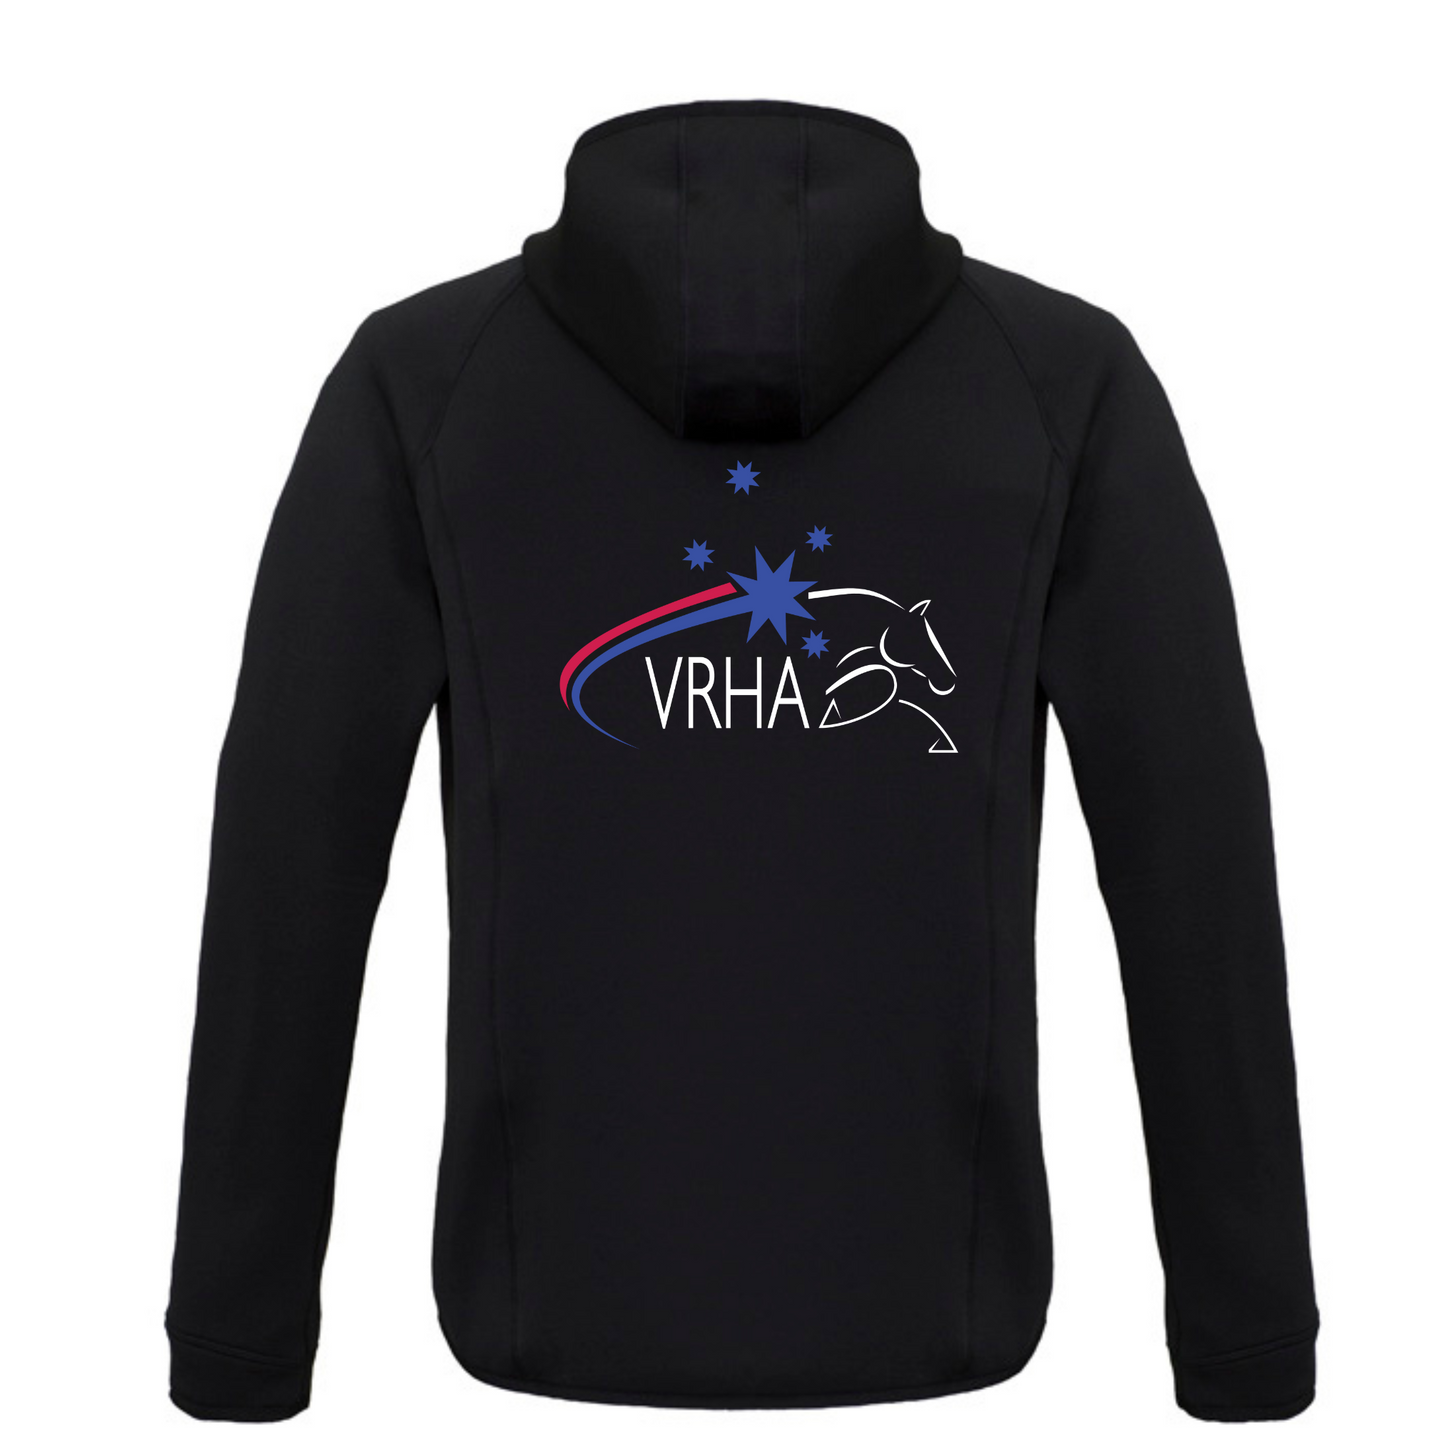 VRHA Stealth Jacket